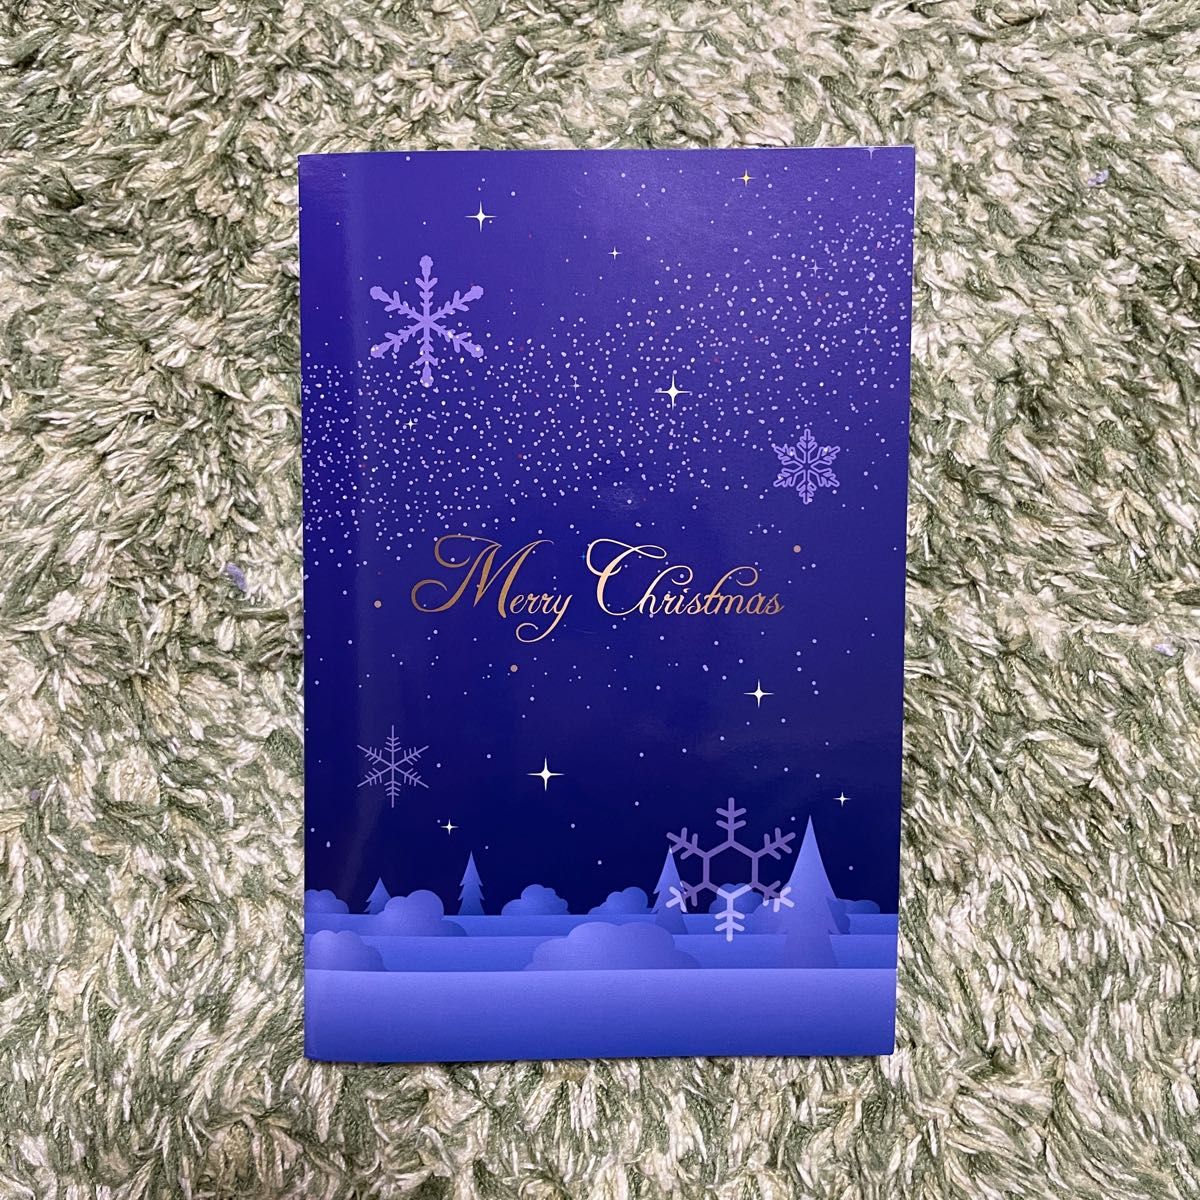 倖田來未/ファンクラブ限定クリスマスカード非売品